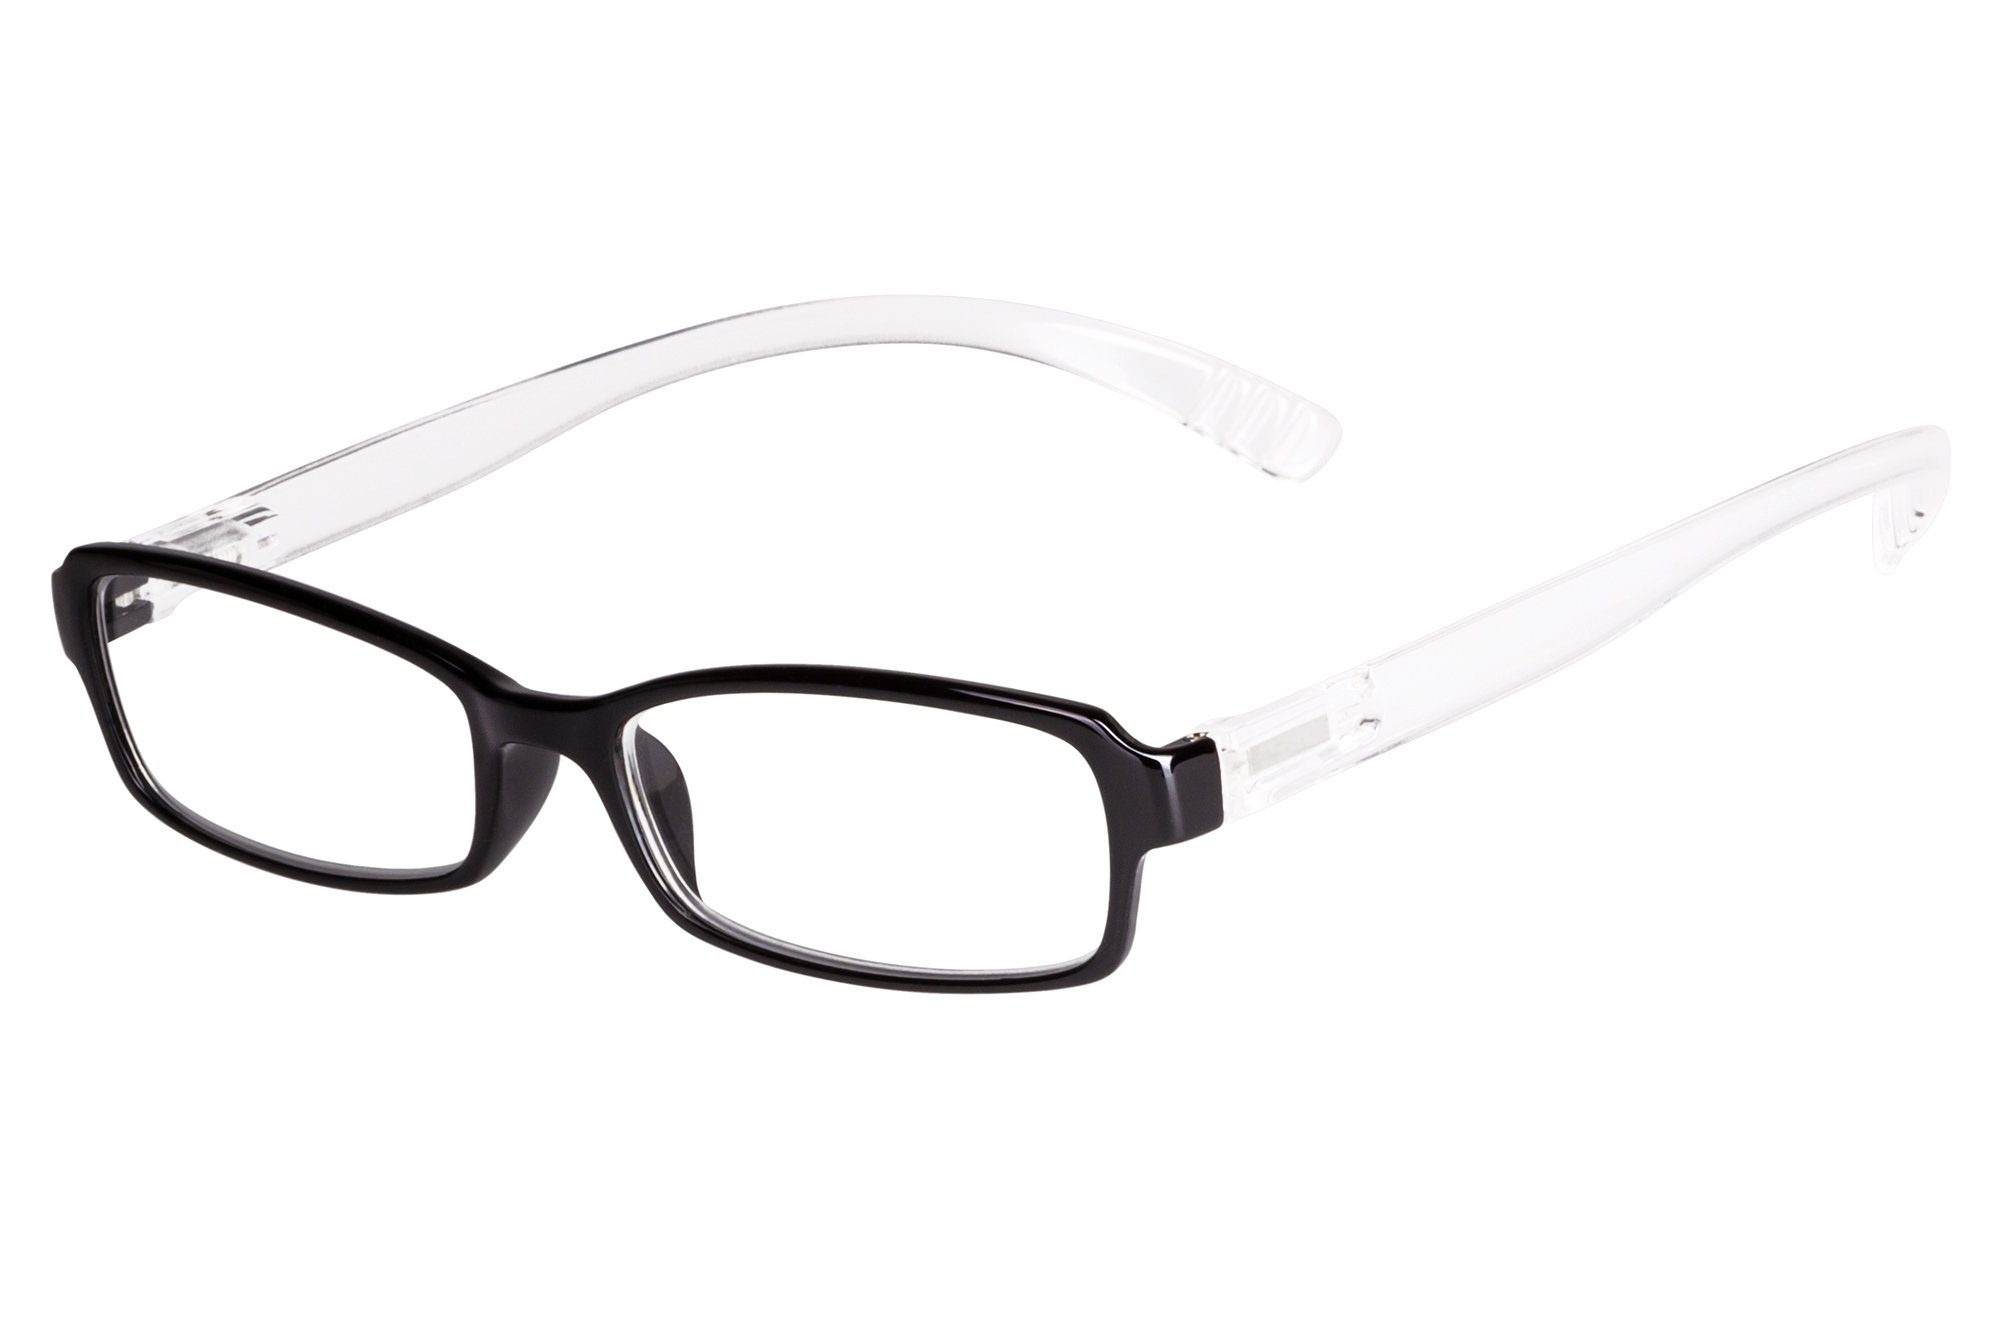 UrbanSky Lesebrille Hang On, extra lange Bügel mit starker Biegung zum  Bügelende hin: Damit bleibt die Brille locker um den Nacken hängen, wenn  Sie die Brille absetzen. online kaufen | OTTO